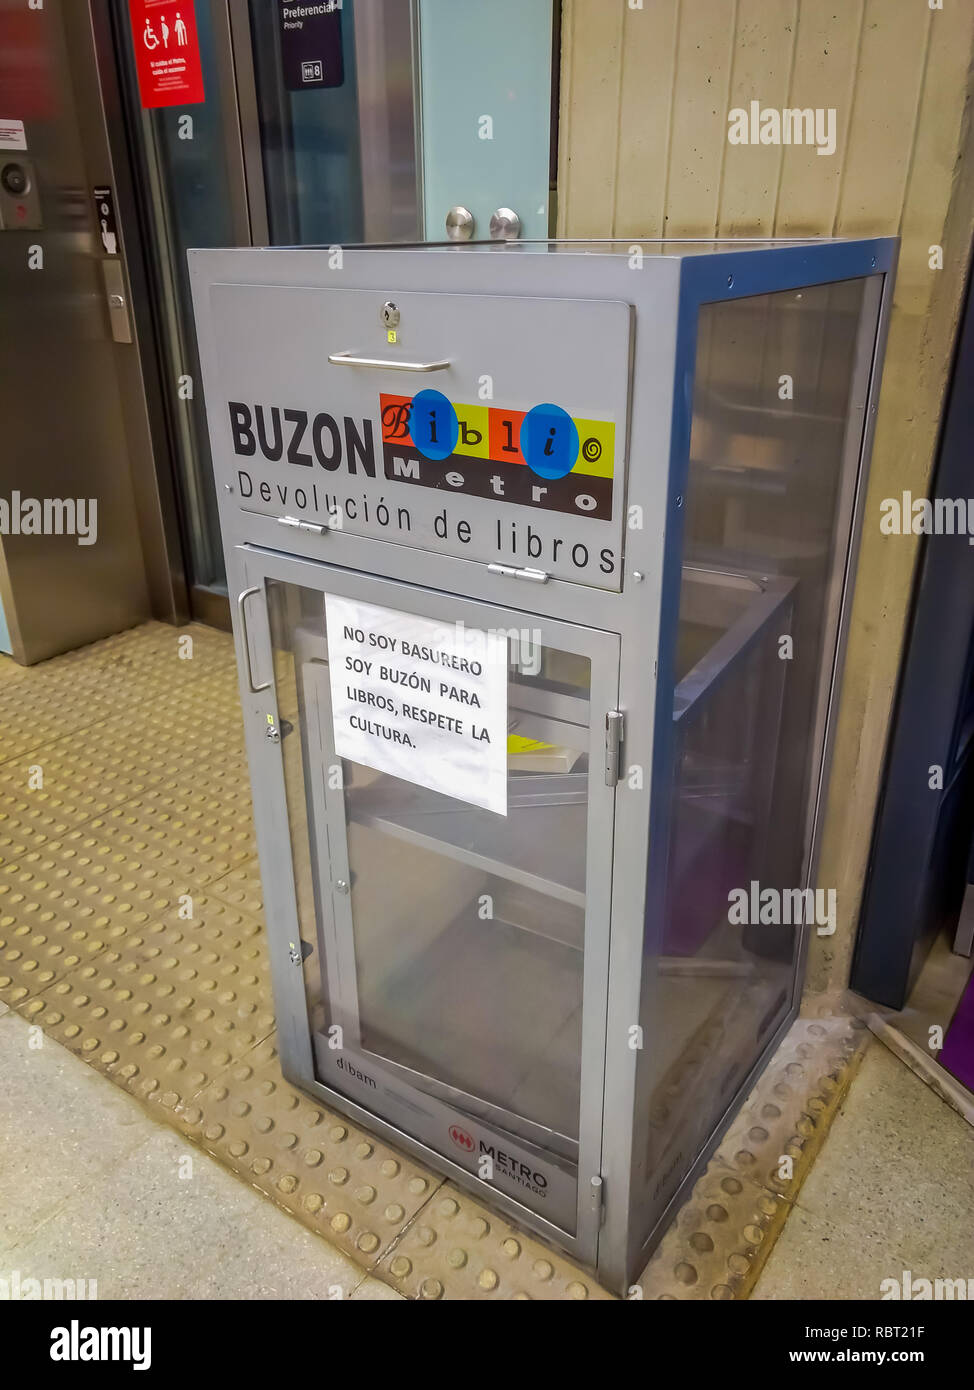 SANTIAGO, CHILI - 14 septembre 2018 : à l'intérieur de la boîte aux lettres utilisée pour le transfert des livres à l'intérieur de la station de métro de Santiago du Chili Banque D'Images